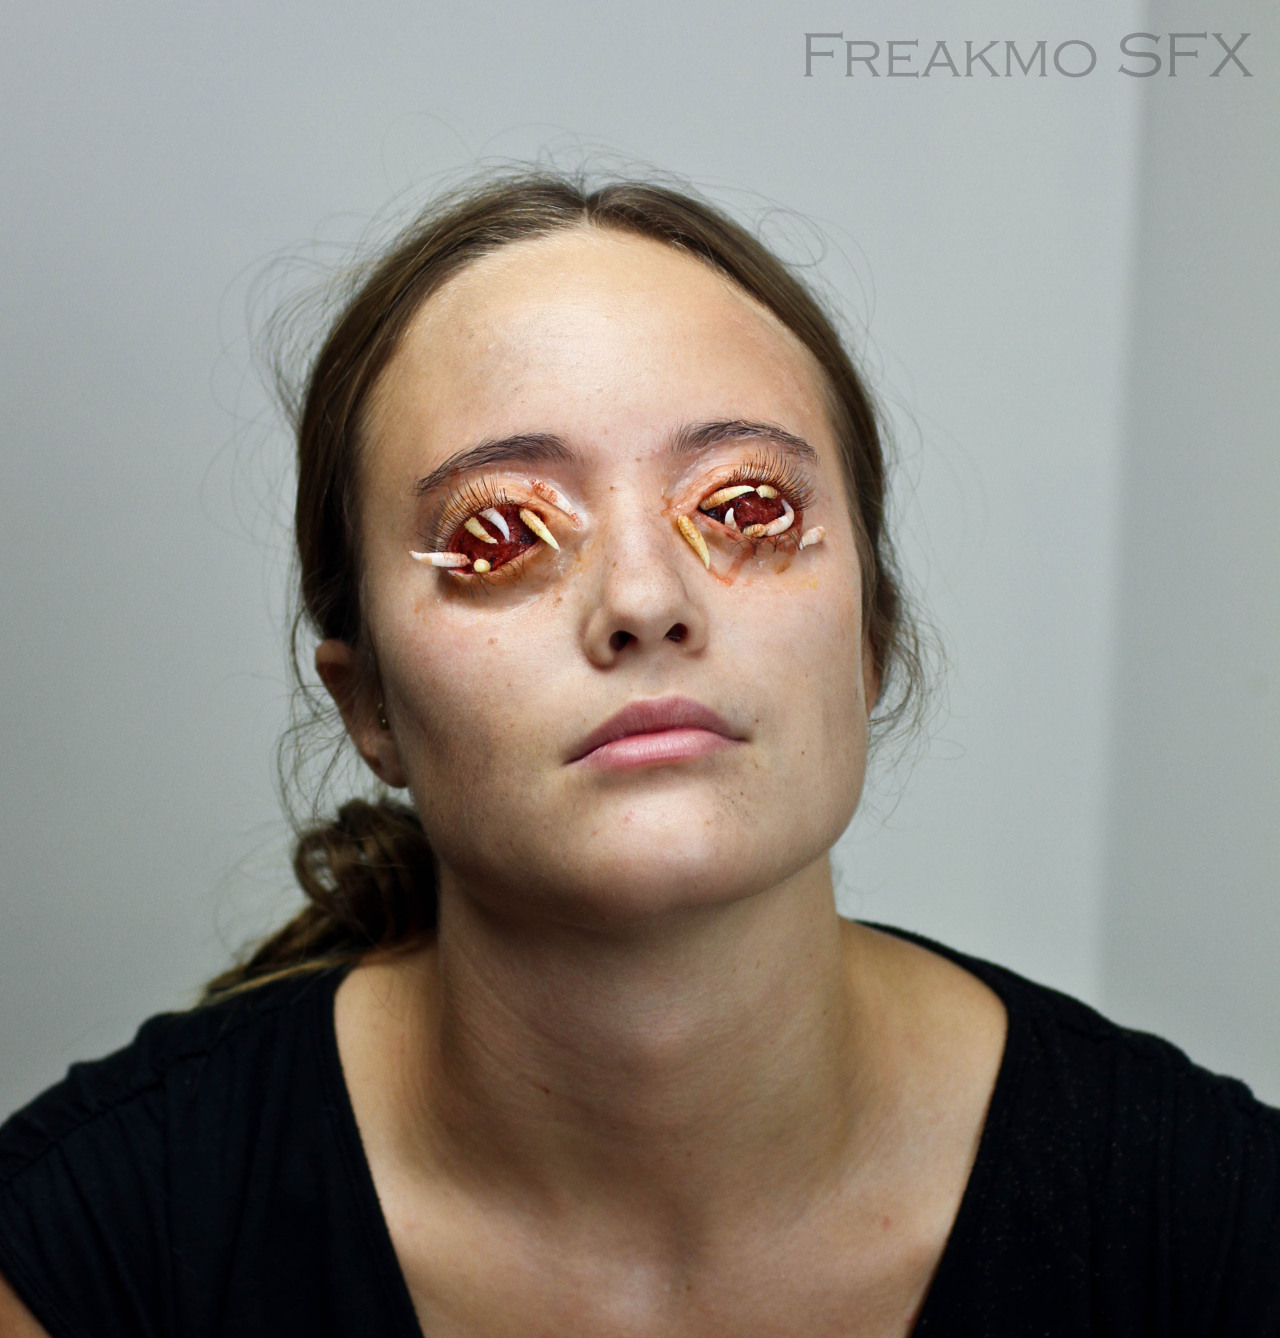 Freakmo SFX — Photos of the maggot eye makeup